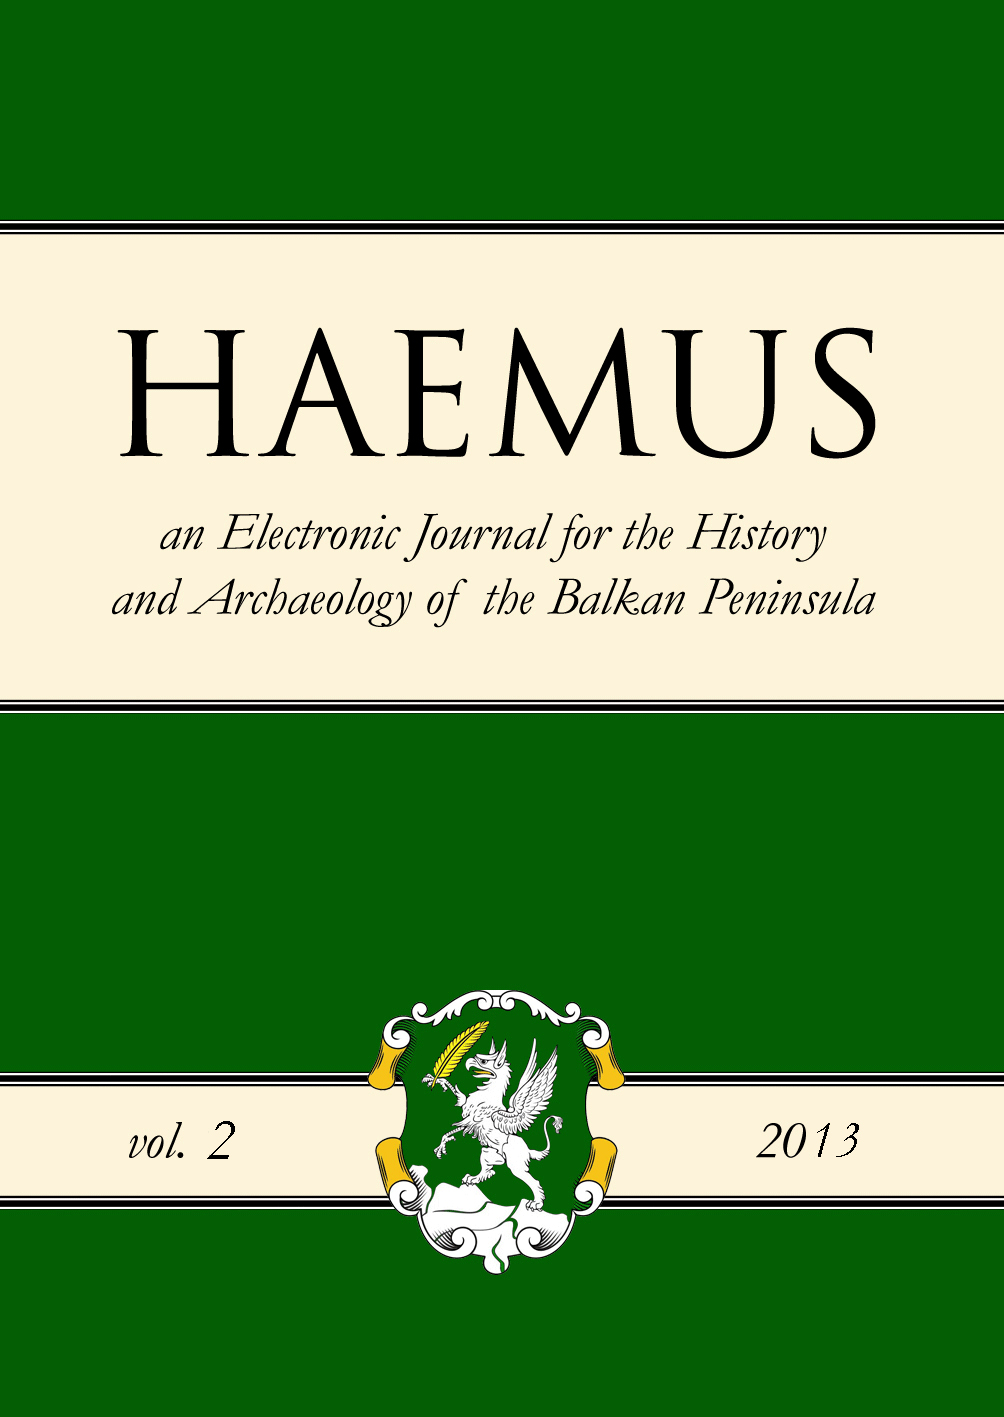 Cover Haemus Journal 2-2013